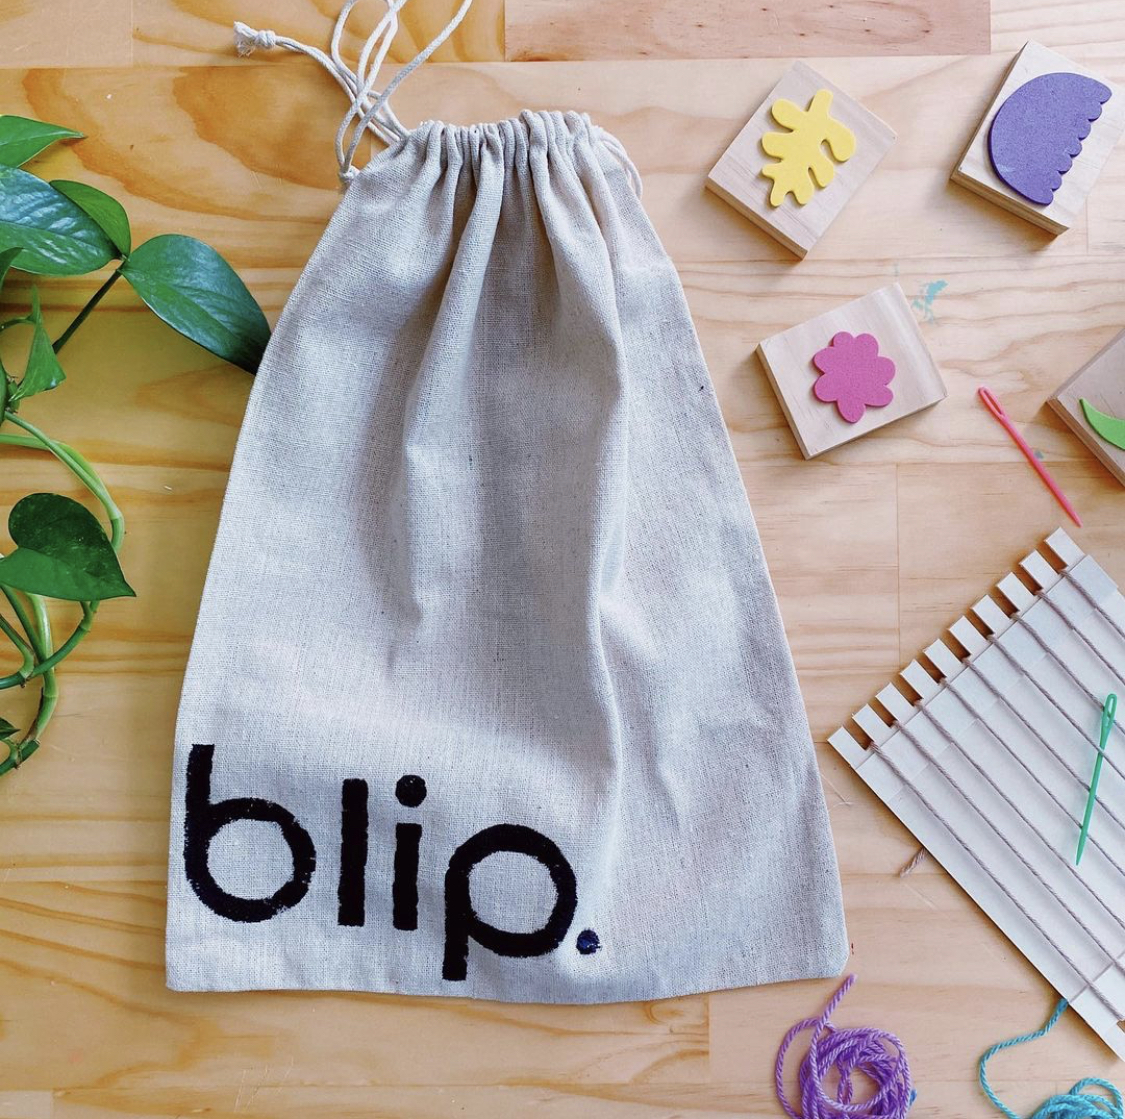 blip art school art kits for kids